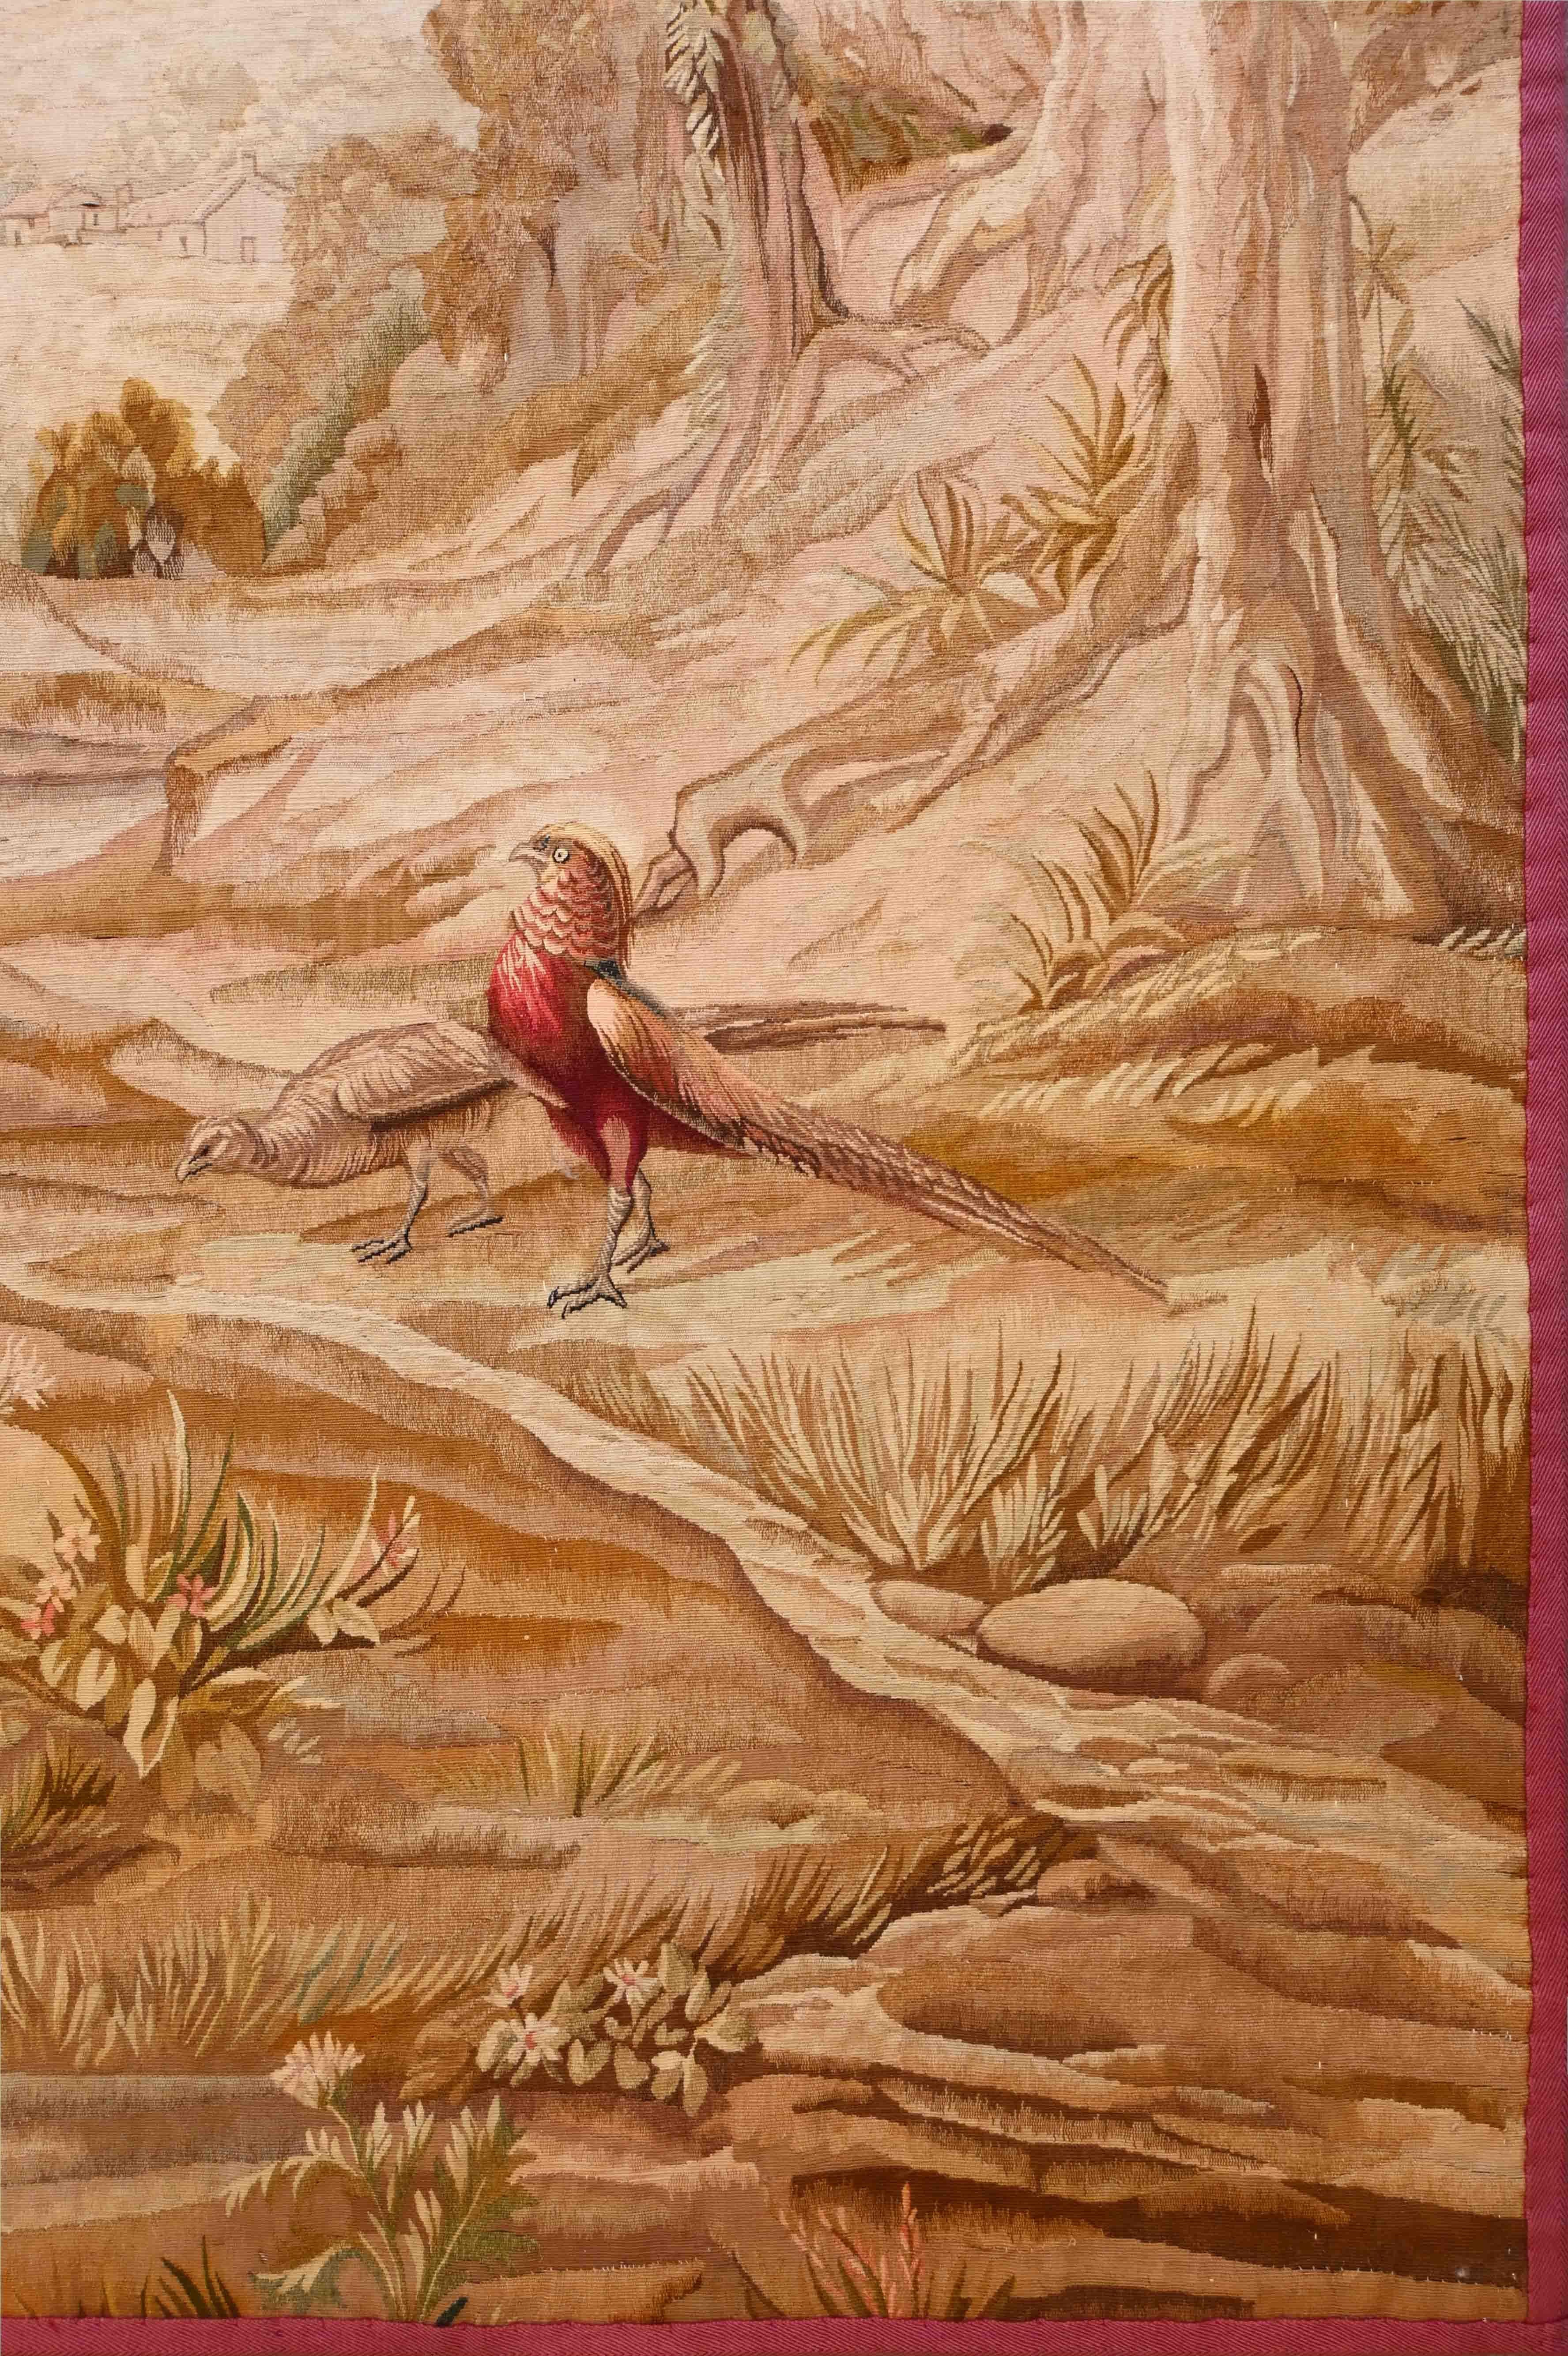 une très belle tapisserie d'Aubusson du 19ème siècle très fine avec deux oiseaux et de très jolies couleurs - N ° 1248

Grâce à notre atelier de restauration-conservation et aussi à notre savoir-faire, 
nous avons le plaisir de vous présenter des